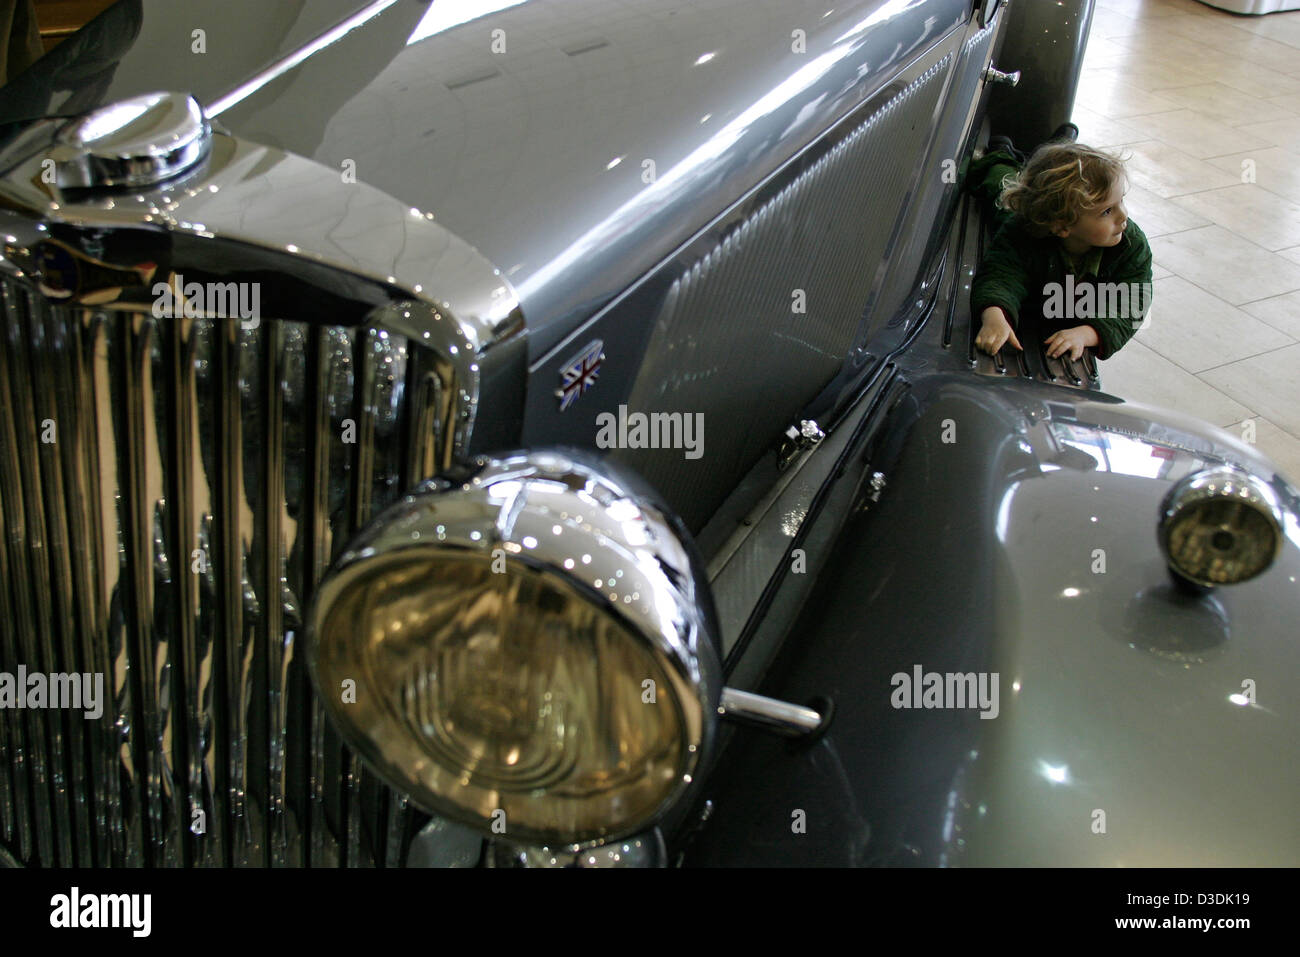 Londra, Inghilterra - Marzo 2004: durante un auto classica pre-vendita al visitatore del bambino gioca su un 1935 Talbot Tourer. La vettura venduta per £64,625. Foto Stock